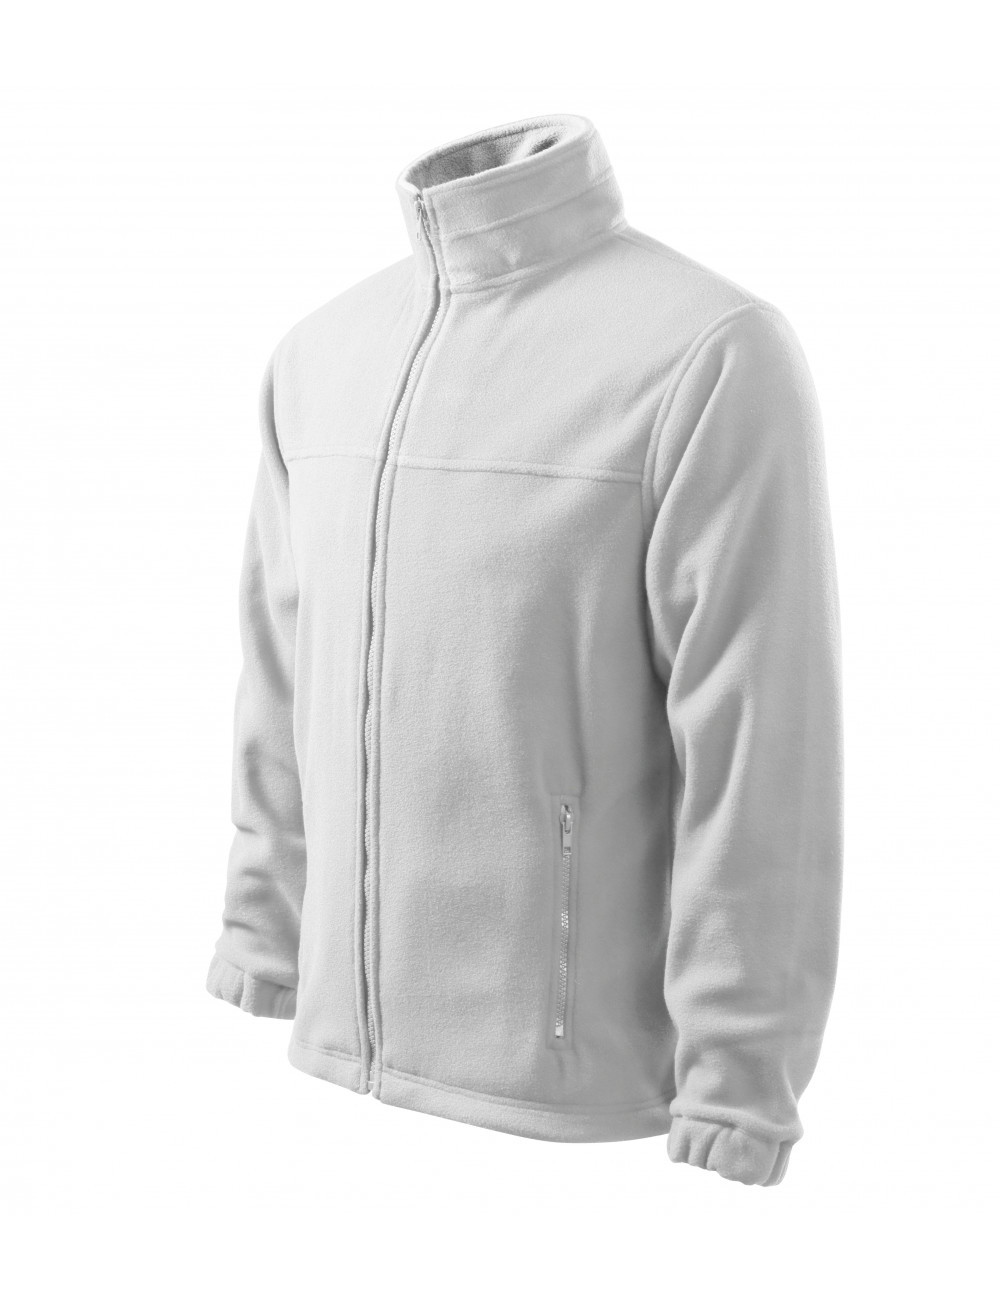 Men`s fleece jacket 501 white Adler Rimeck